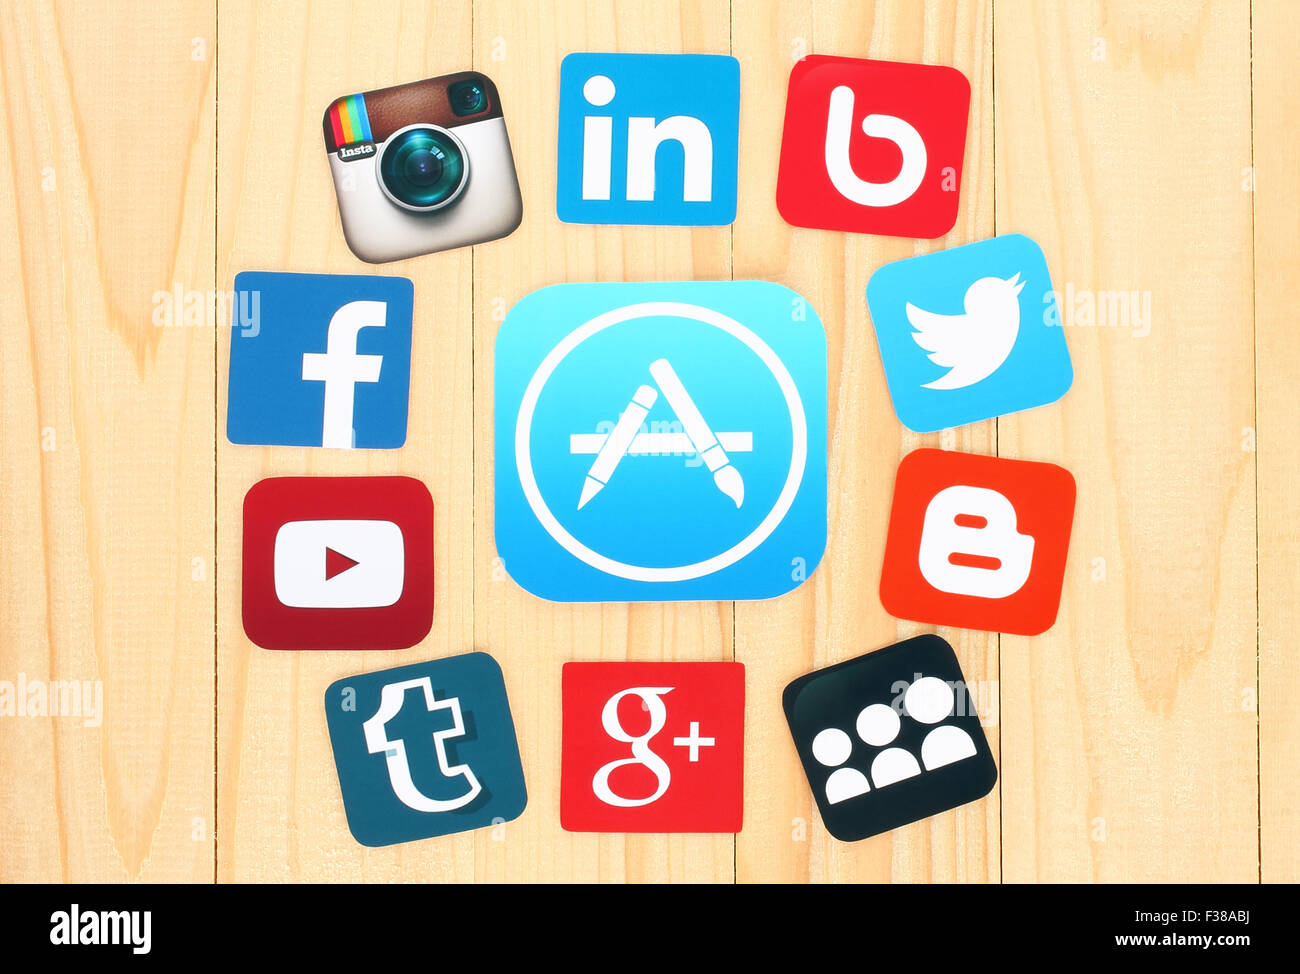 KIEV, UCRAINA - Luglio 01, 2015: intorno all'icona AppStore sono posti famosi social media le icone Foto Stock